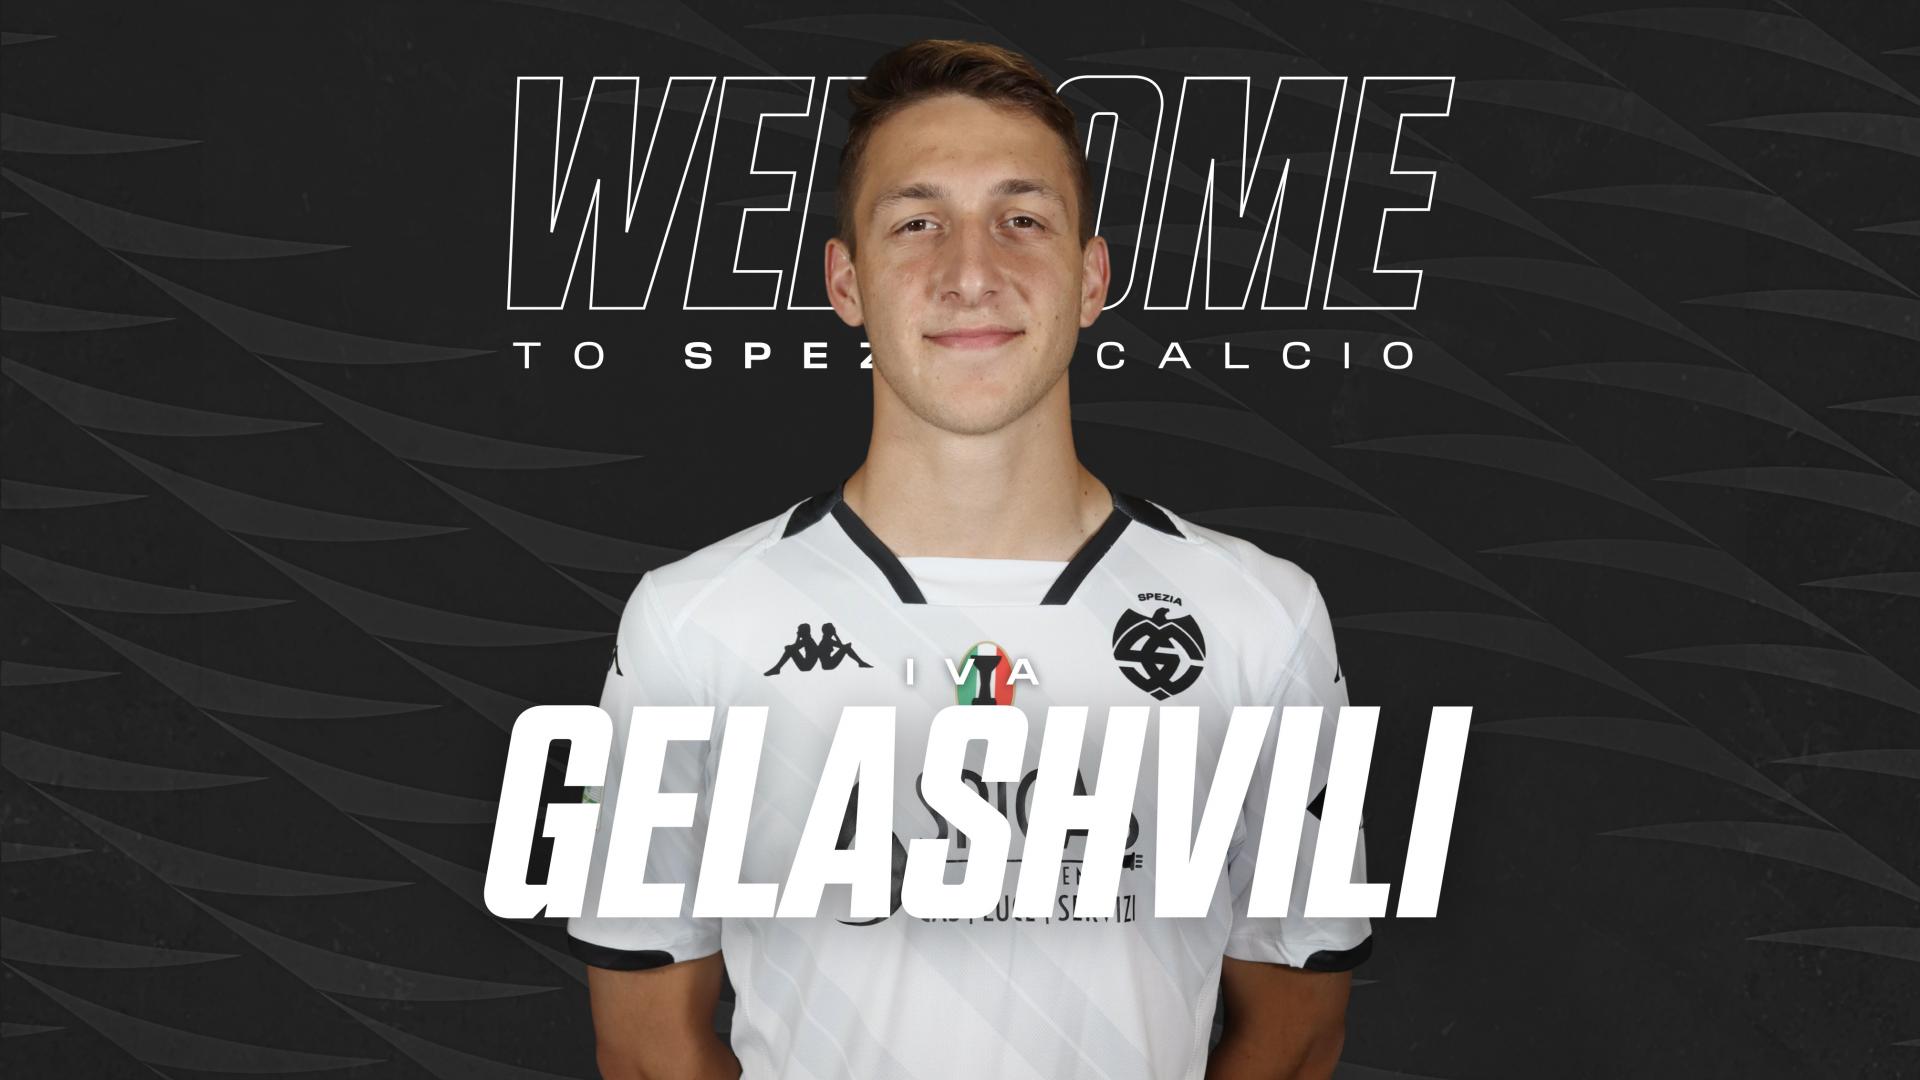 Ufficiale | Iva Gelashvili è un nuovo calciatore dello Spezia